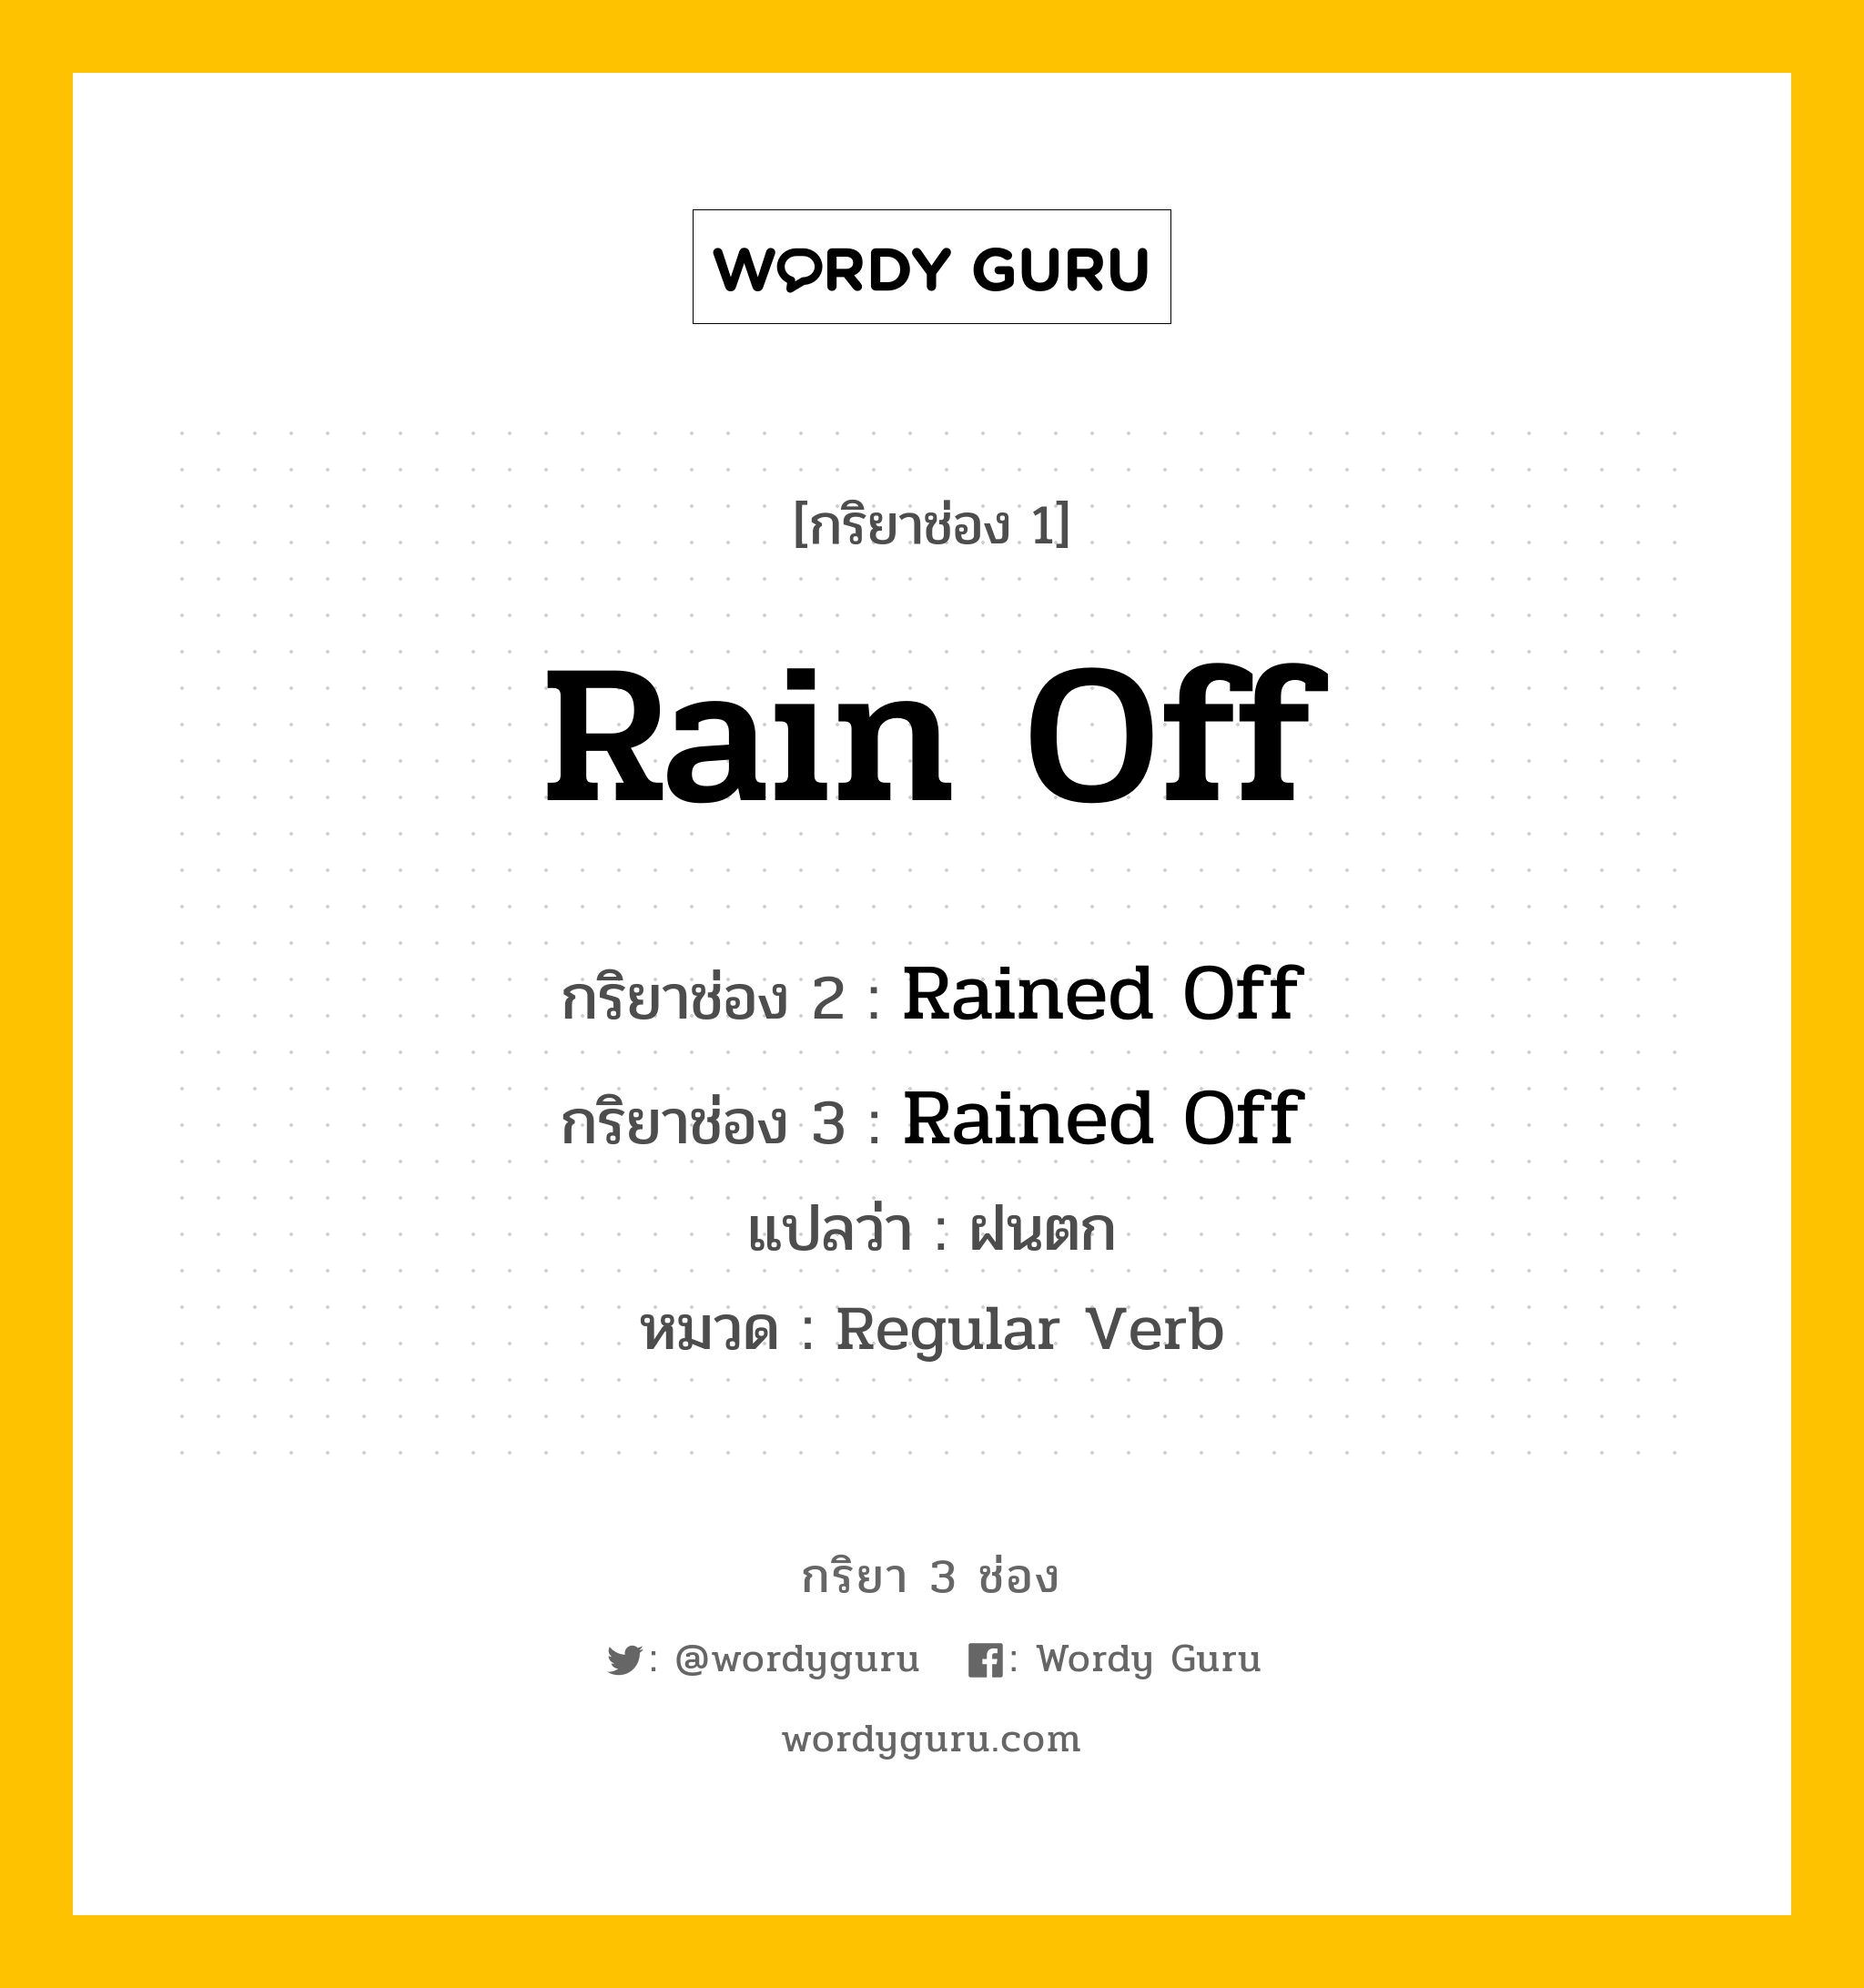 กริยา 3 ช่อง: Rain Off ช่อง 2 Rain Off ช่อง 3 คืออะไร, กริยาช่อง 1 Rain Off กริยาช่อง 2 Rained Off กริยาช่อง 3 Rained Off แปลว่า ฝนตก หมวด Regular Verb หมวด Regular Verb